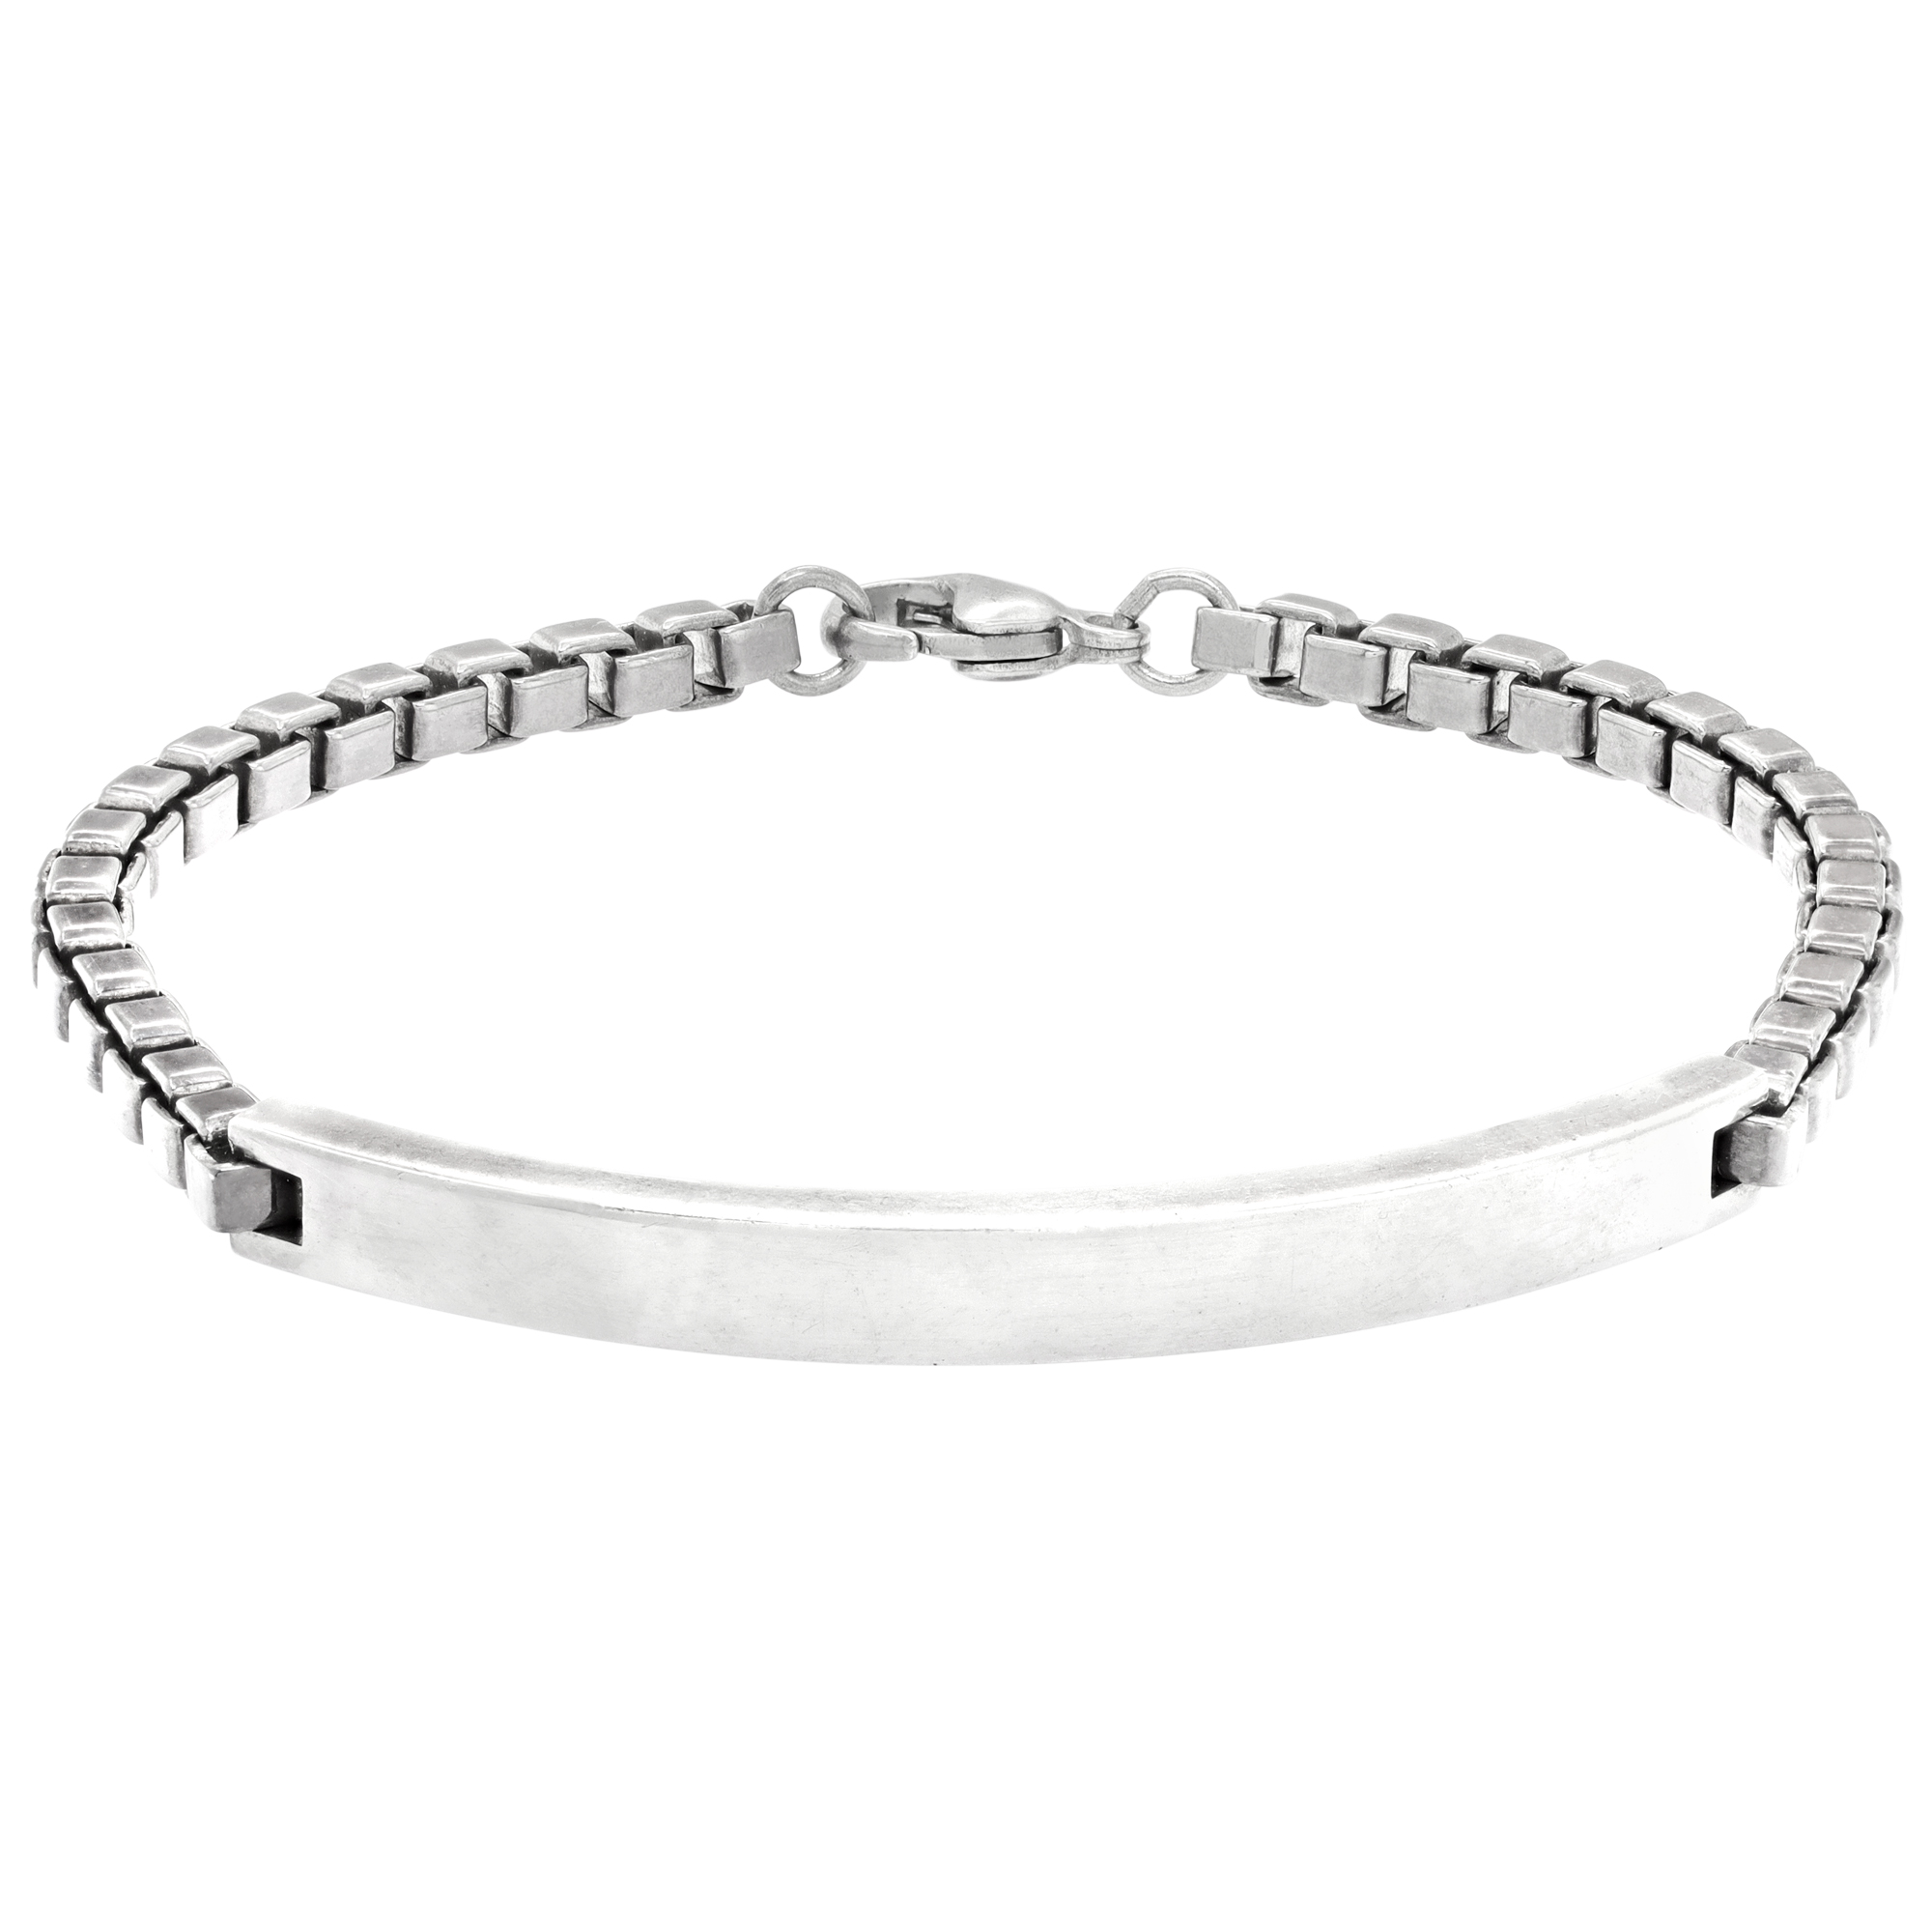 Tiffany & Co. Venitian Link ID Bracelet in sterling silver